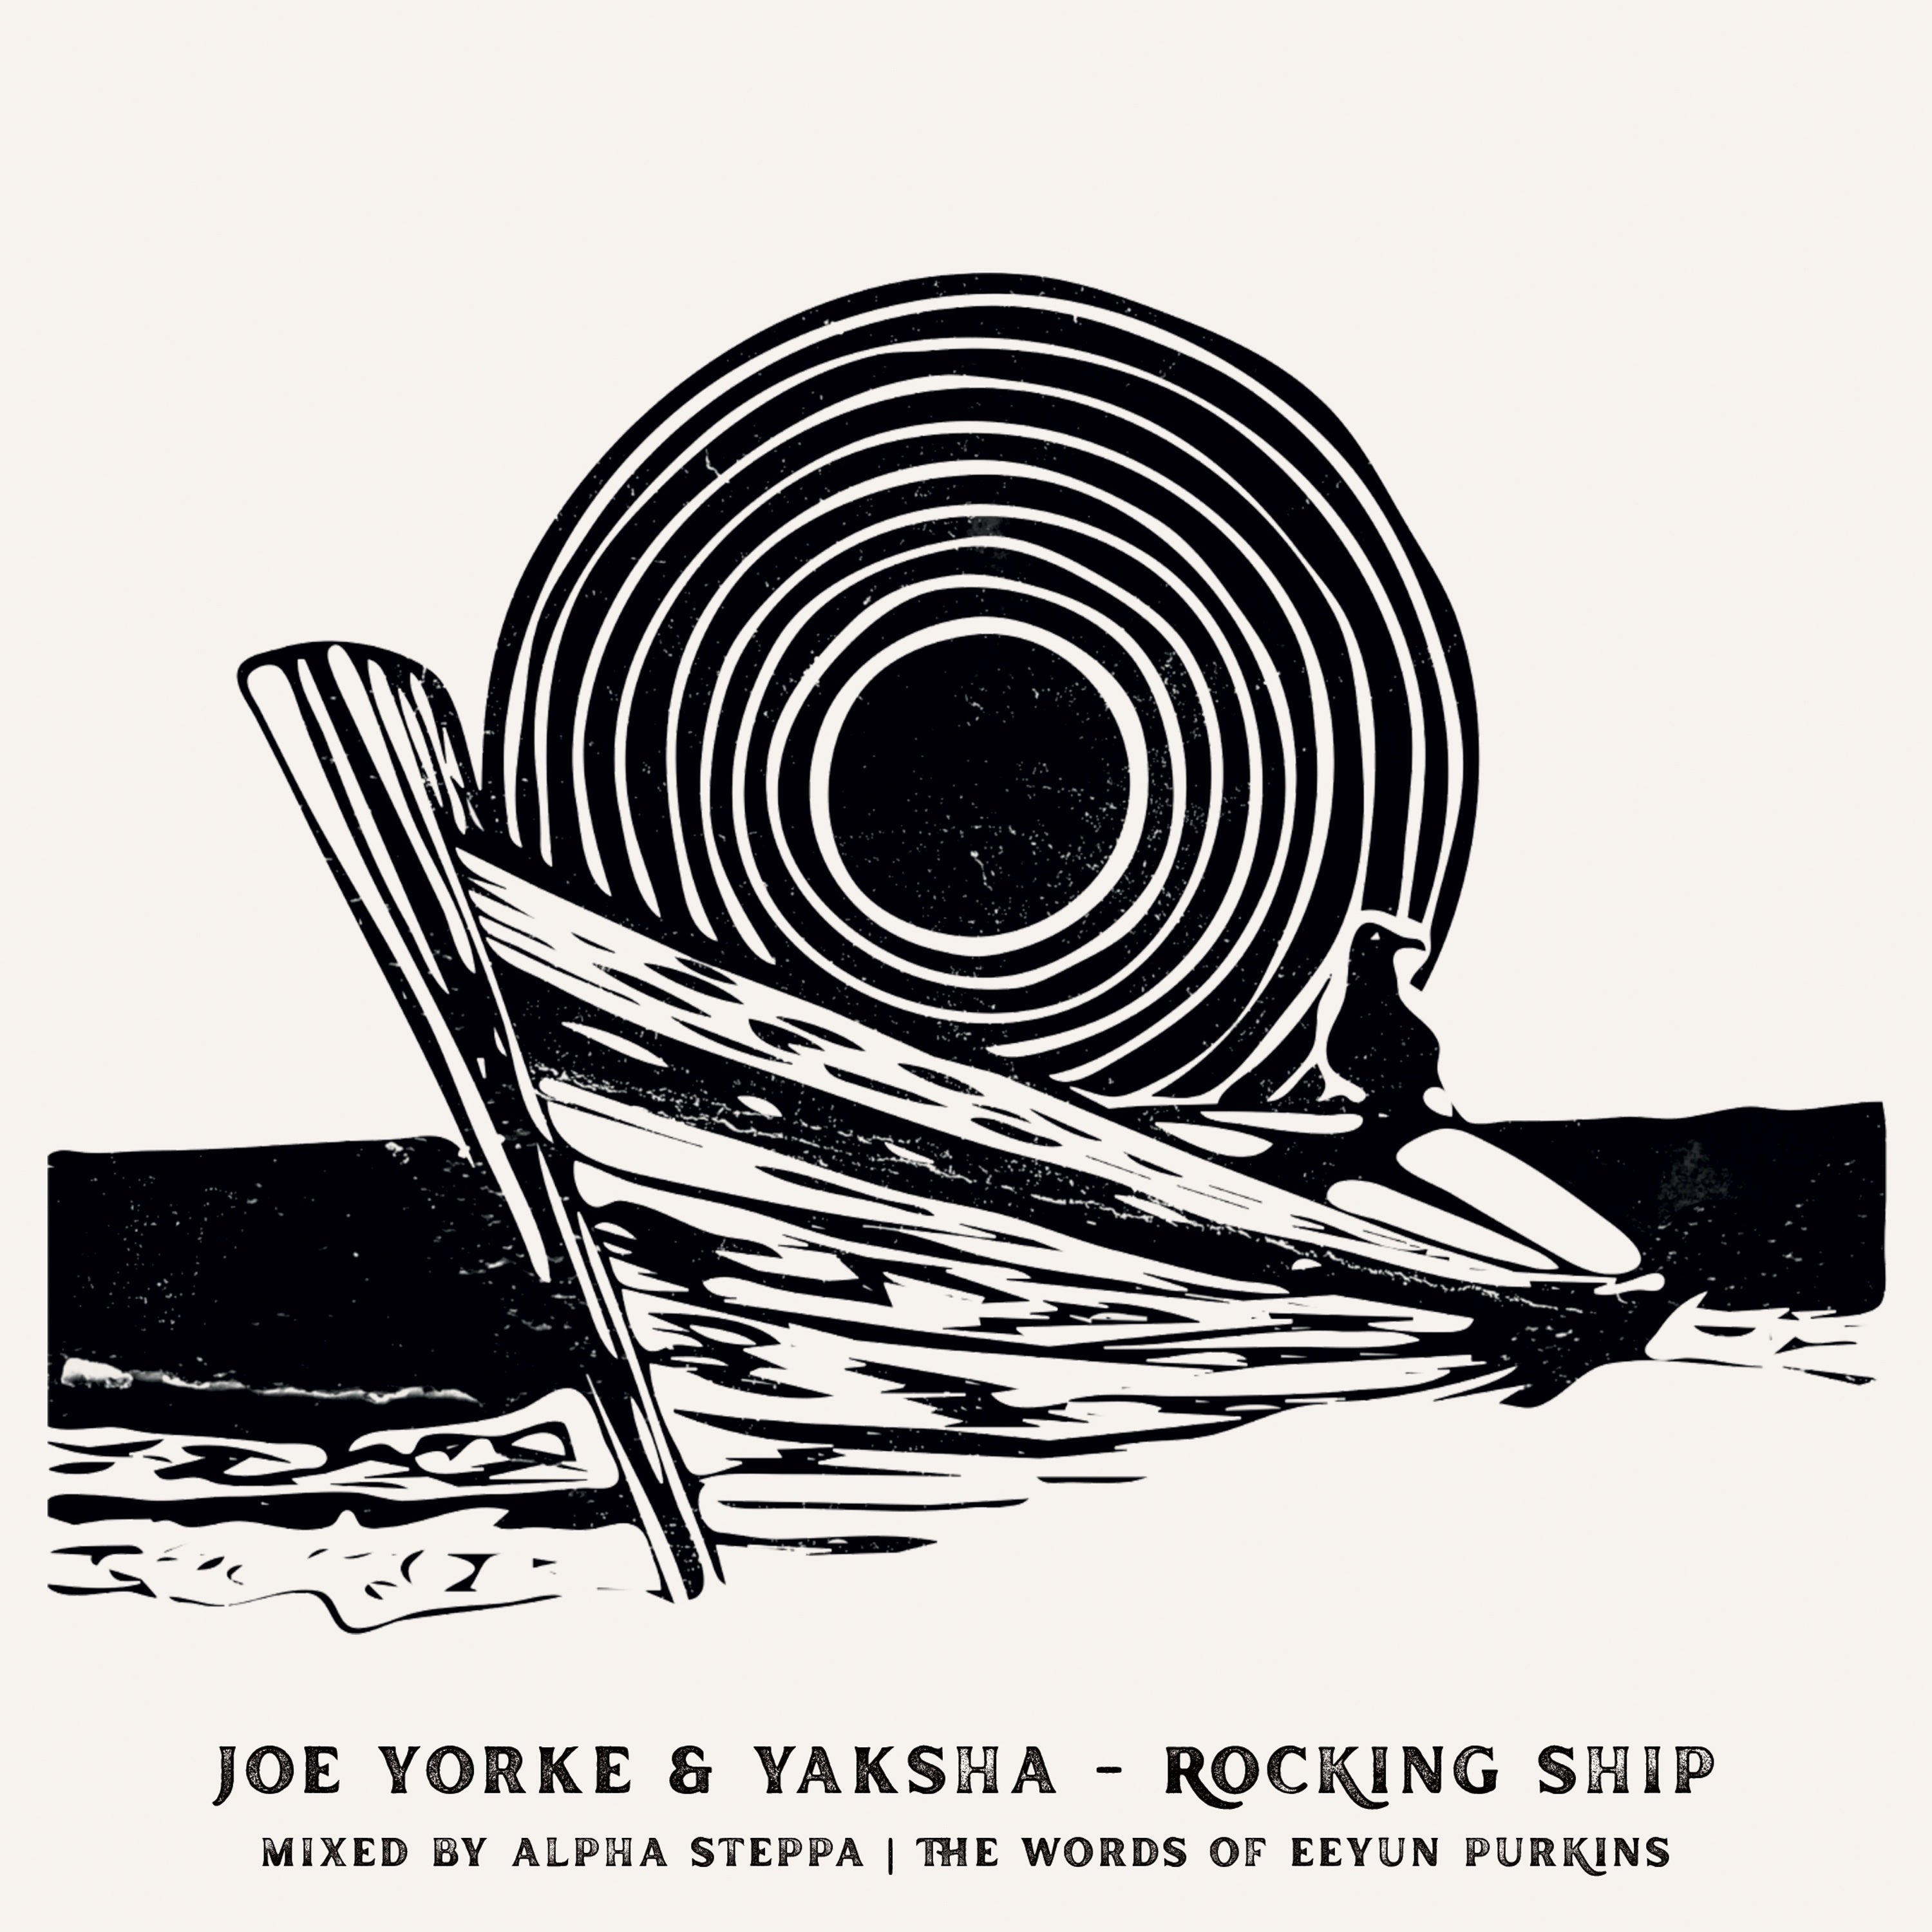  JOE YORKE YAKSHA - ROCKING SHIP MIXED BY ALPHA STEPPA THE WORDS OF EEYUN PURKINS 